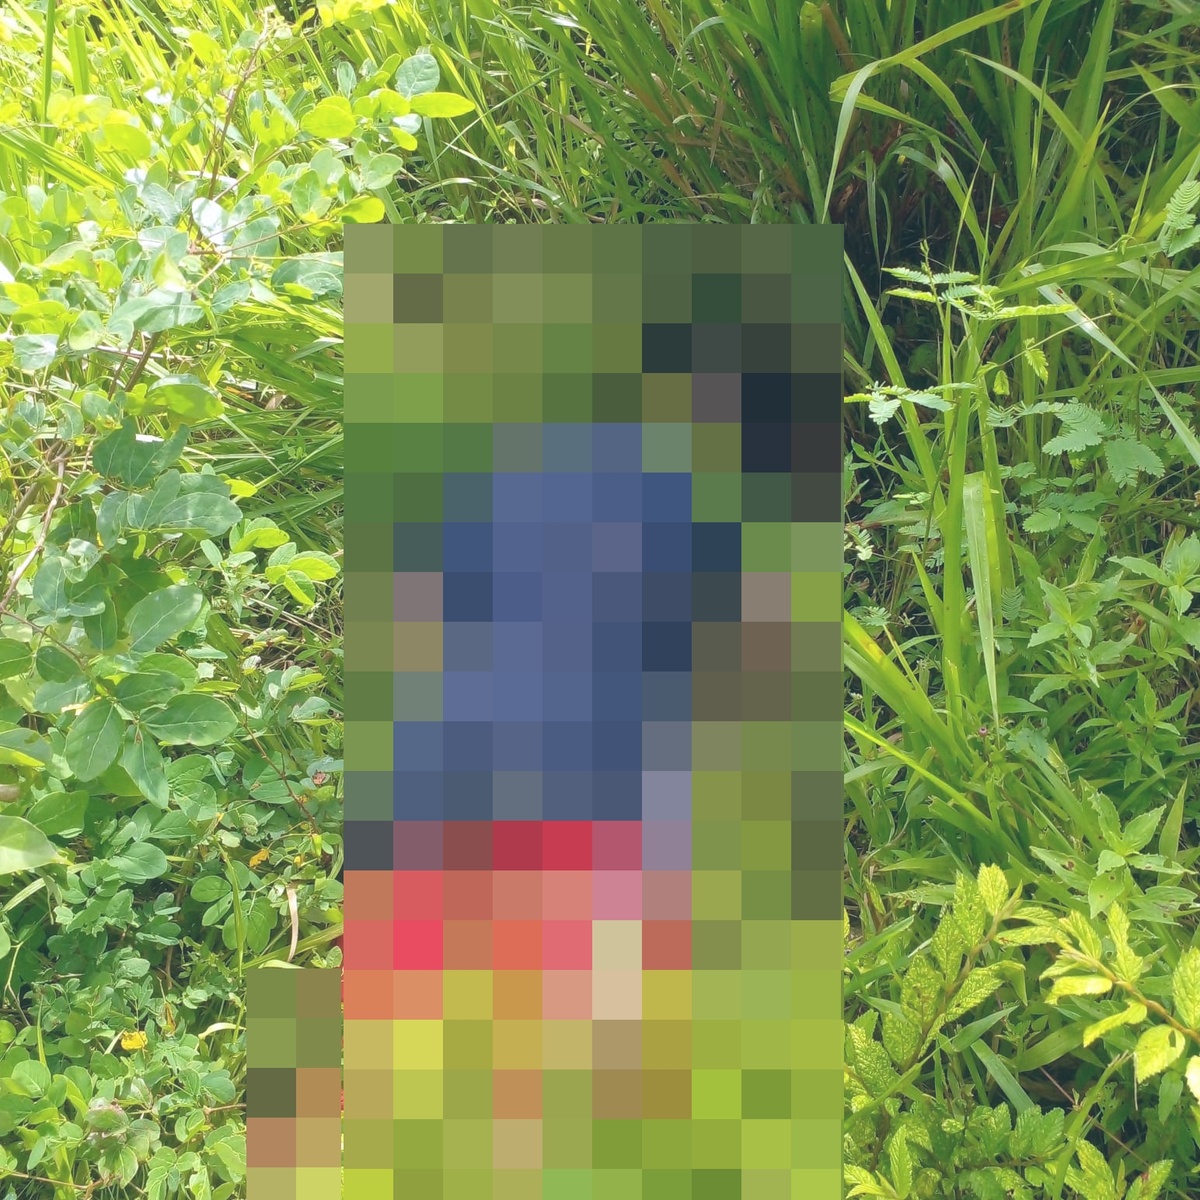 O corpo do adolescente foi encontrado por populares em um matagal na região do bairro Santa Maria do Codipe